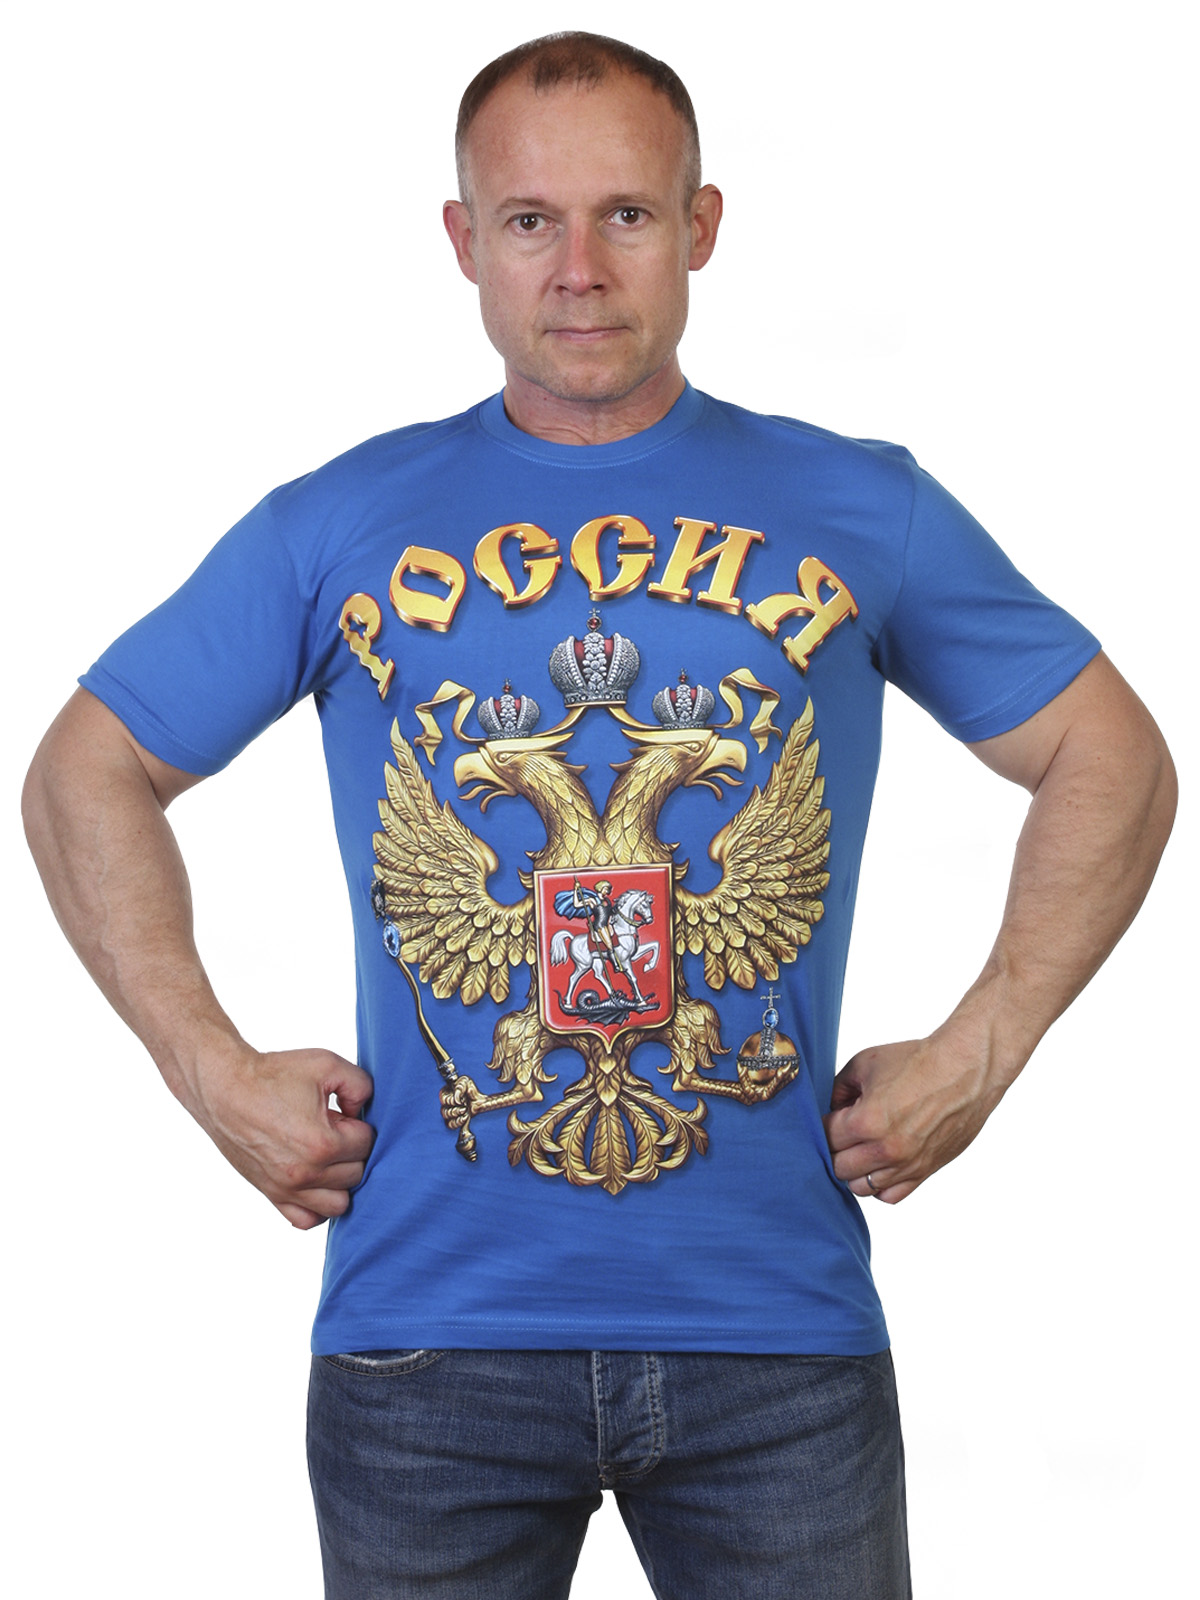 Заказать футболку с российским гербом на выгодных условиях доставки